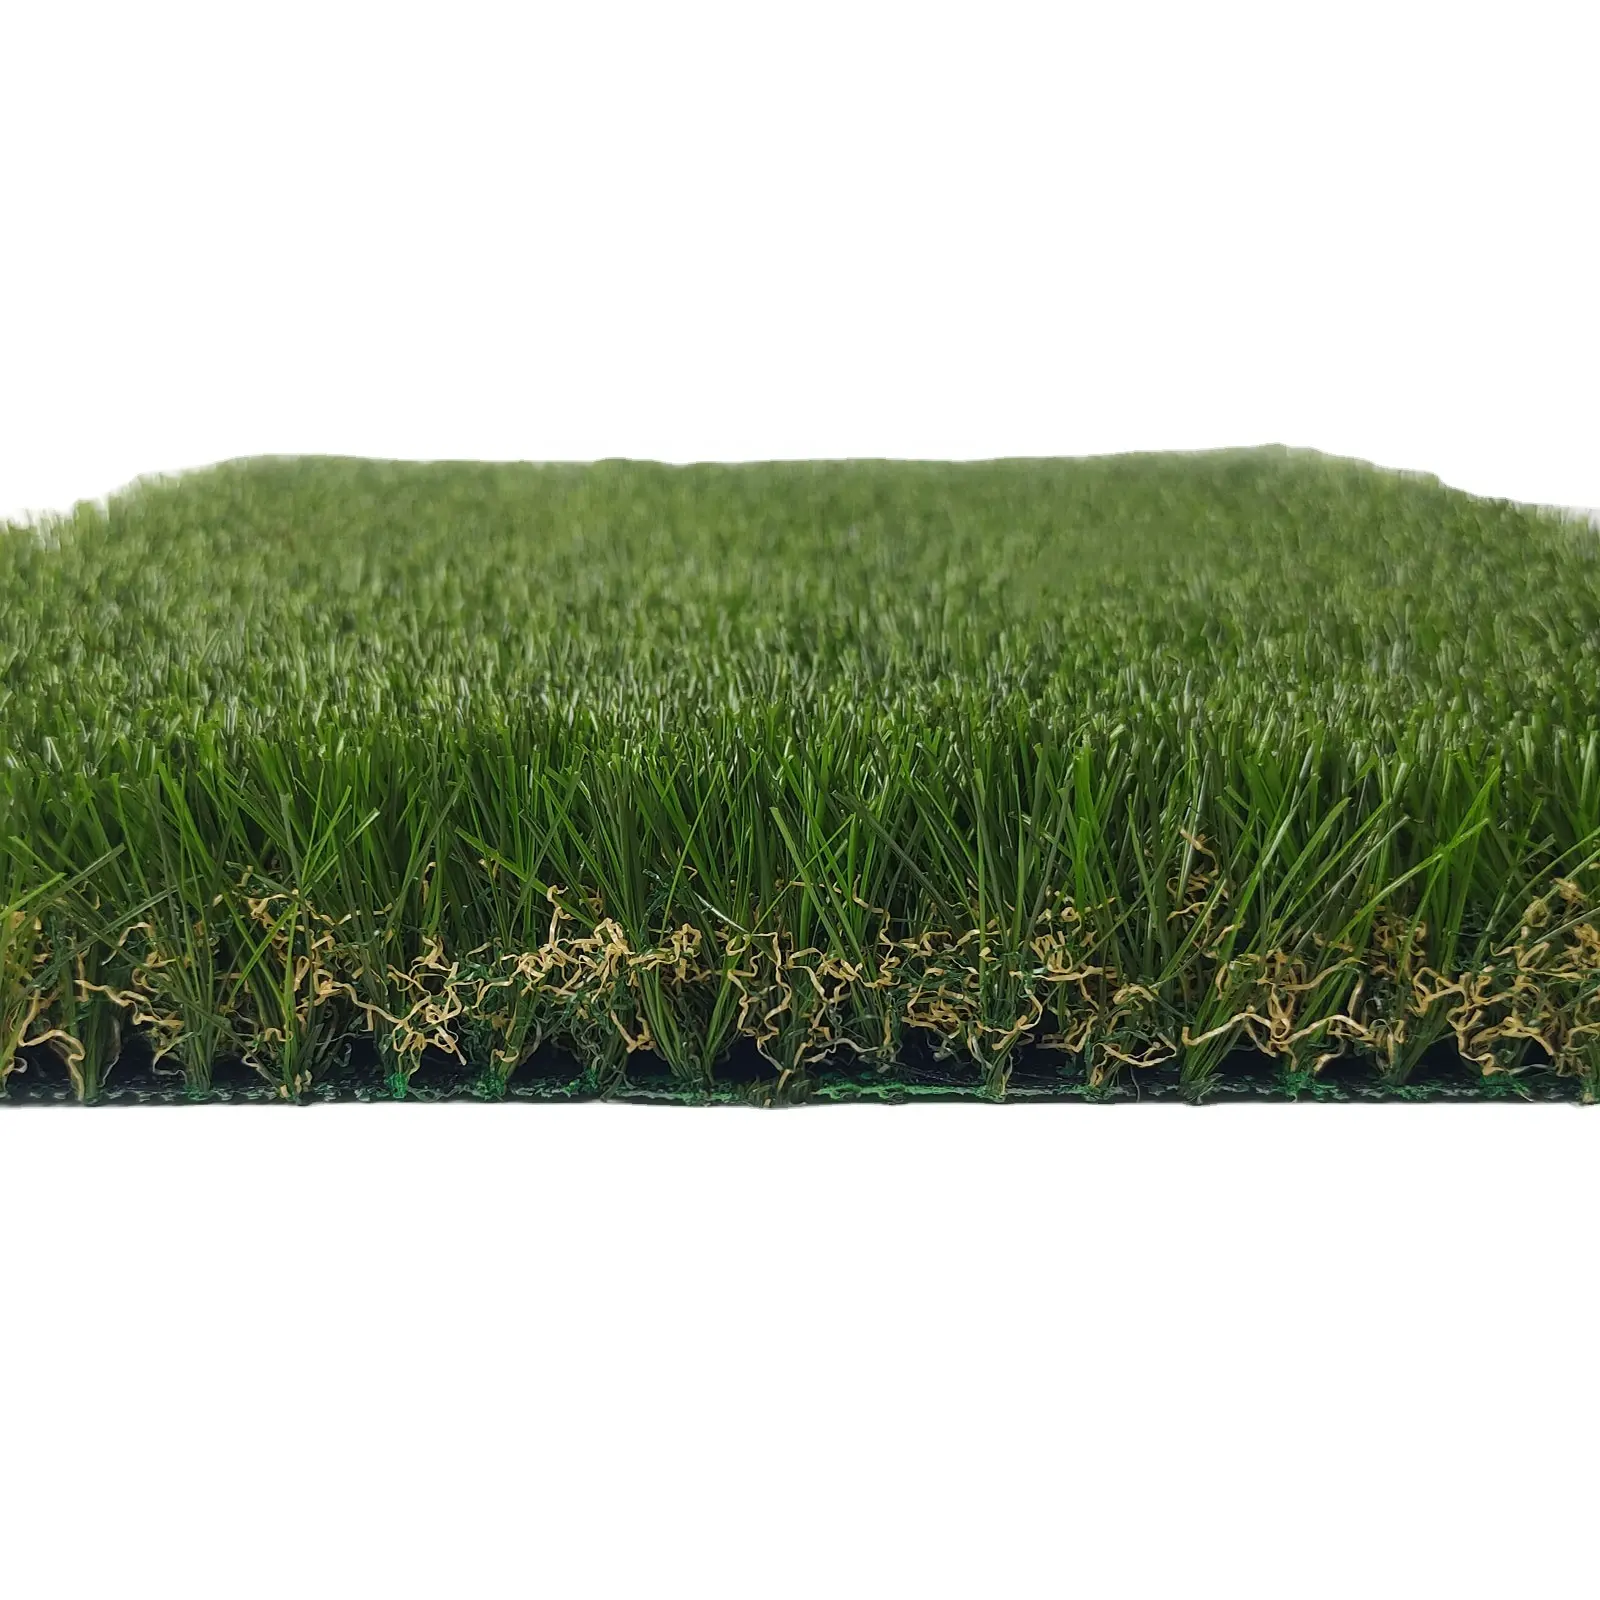 أفضل بيع 1.38 '' 35 ملليمتر العشب الاصطناعي المناظر الطبيعية العشب الاصطناعي في الهواء الطلق العشب الاصطناعي للحديقة سكاي جايد تاوت - لانج